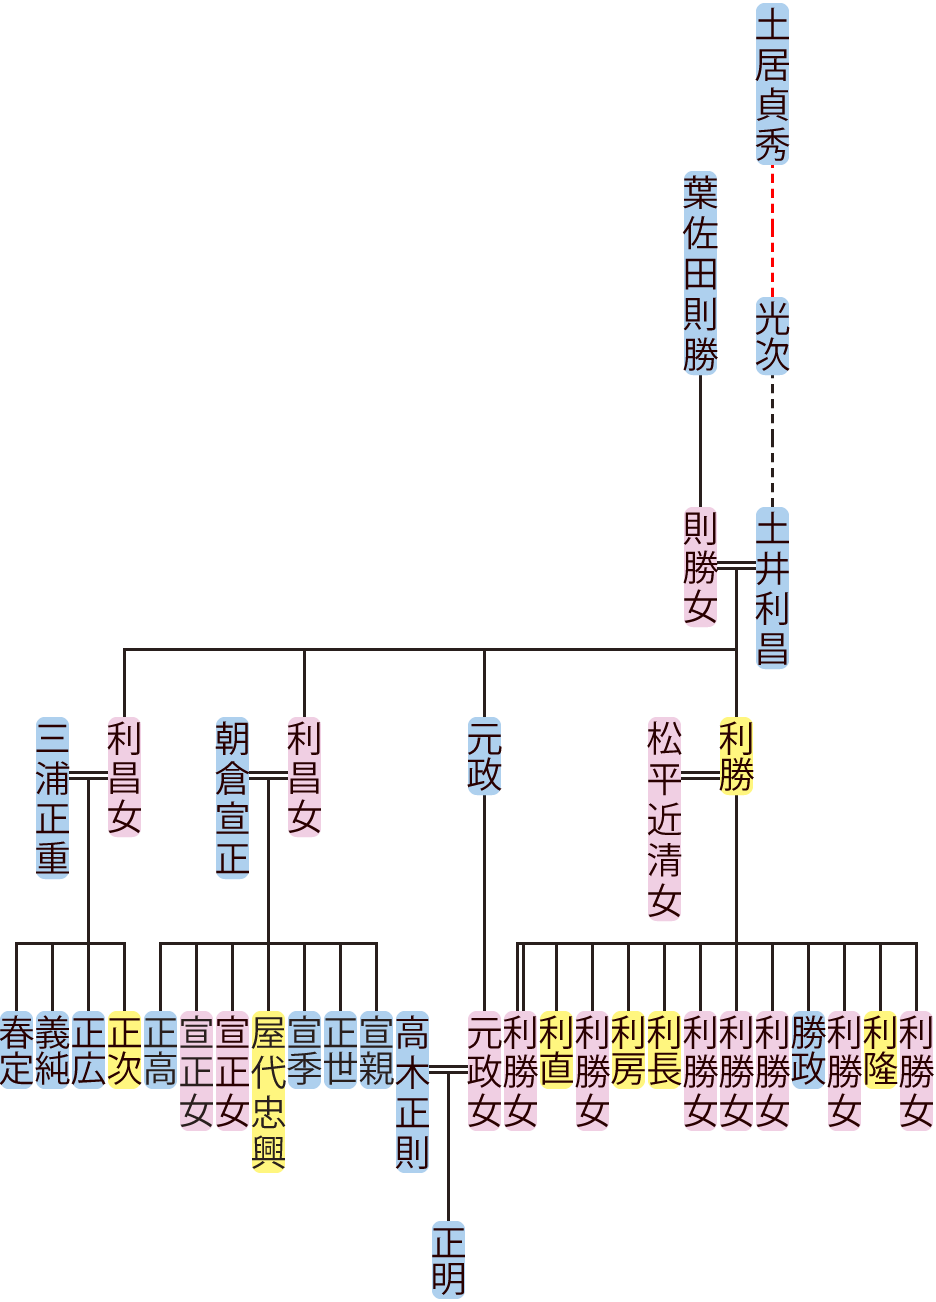 土井利昌の系図